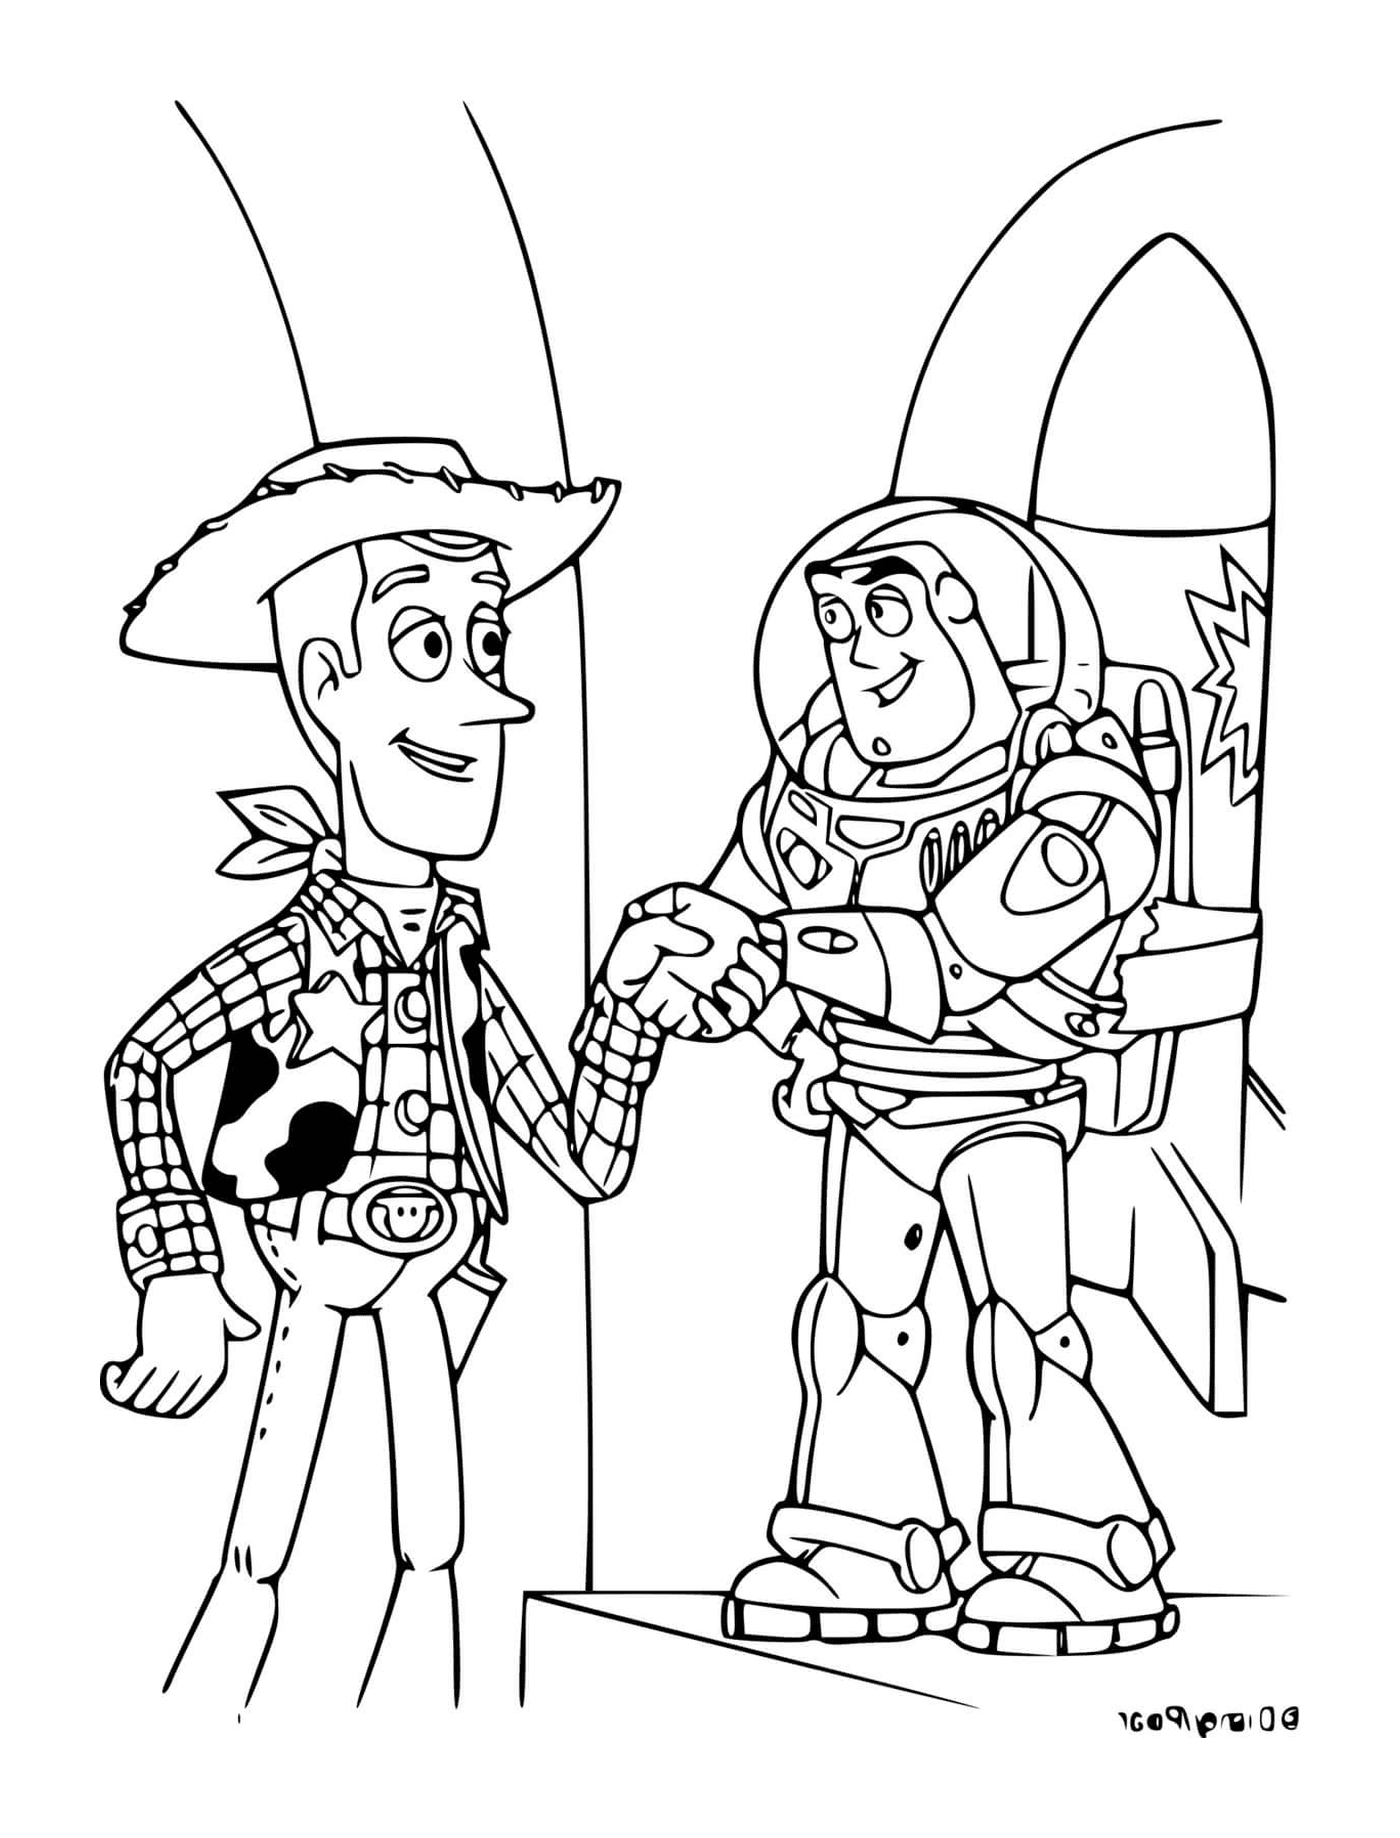  Buzz der Blitz und Woody 